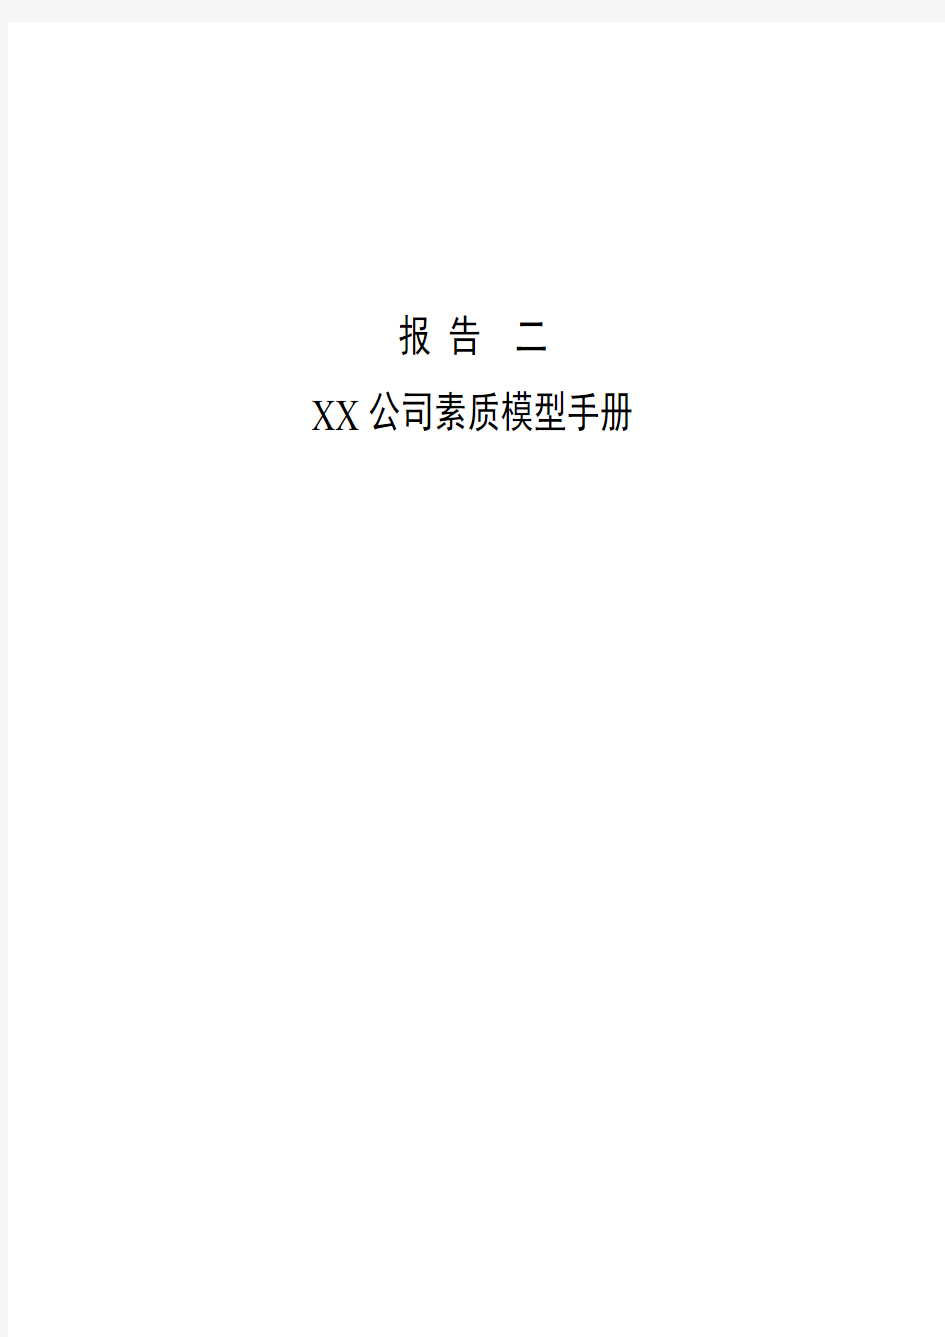 XX公司素质模型手册(1)